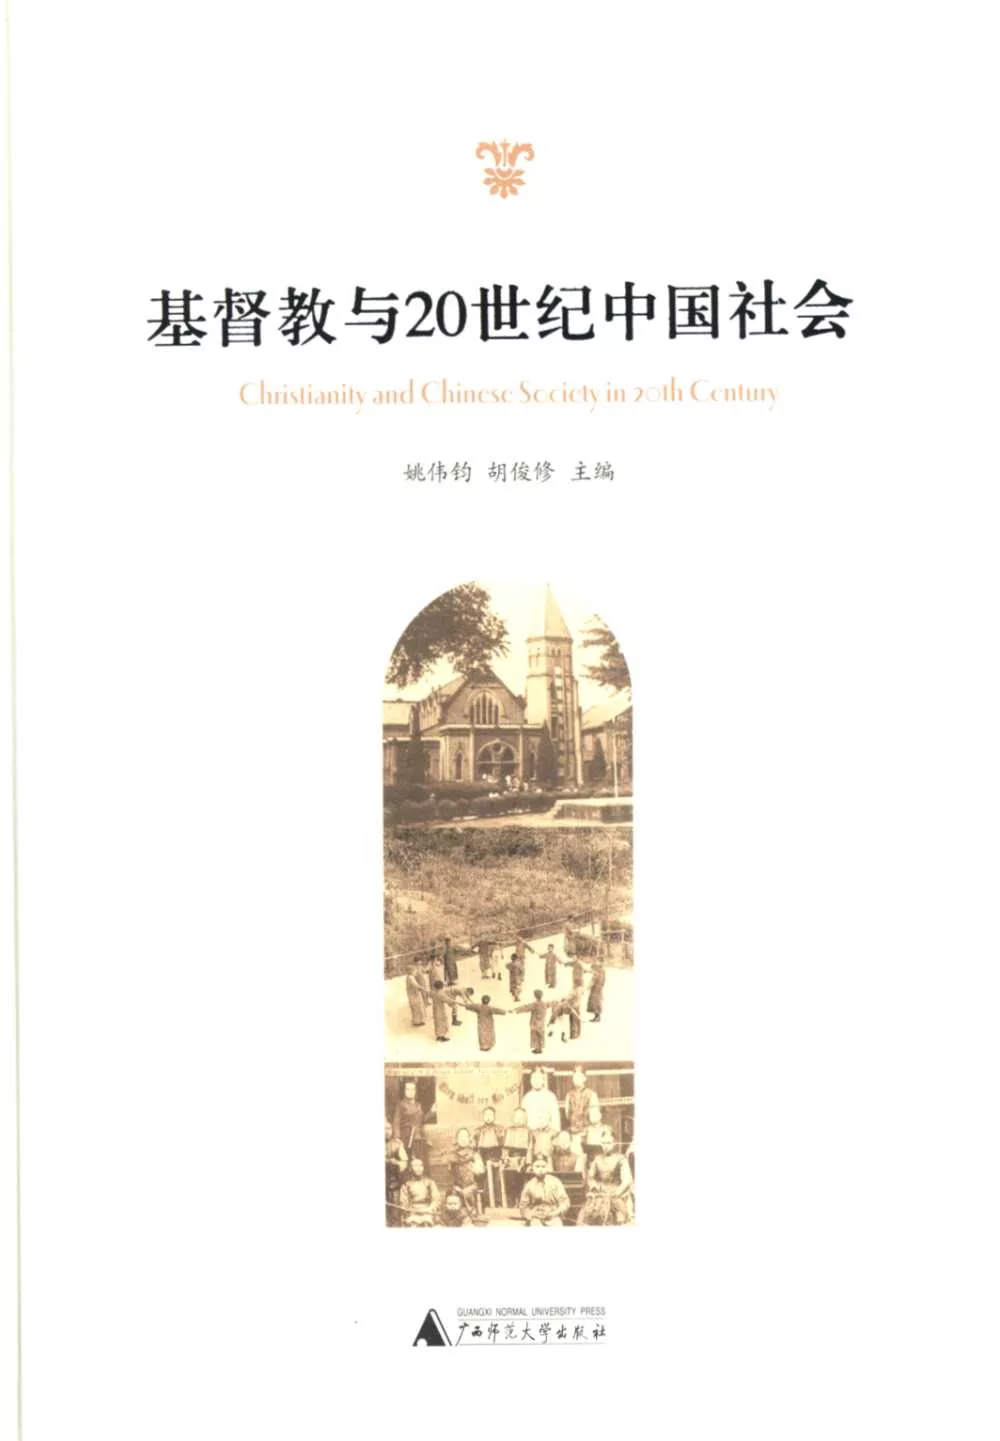 基督教與20世紀中國社會